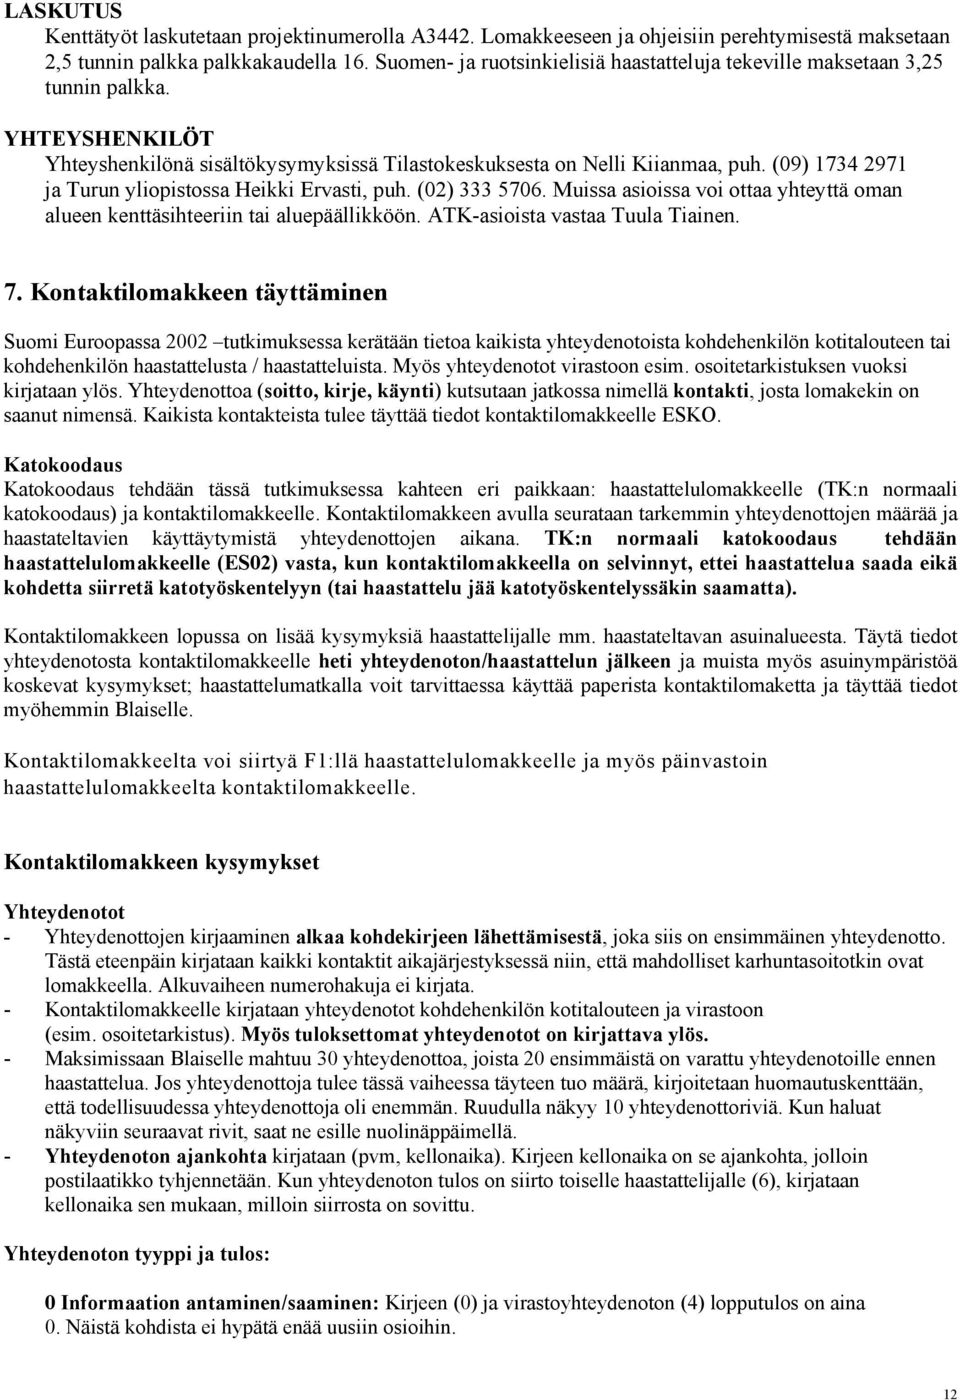 (09) 1734 2971 ja Turun yliopistossa Heikki Ervasti, puh. (02) 333 5706. Muissa asioissa voi ottaa yhteyttä oman alueen kenttäsihteeriin tai aluepäällikköön. ATK-asioista vastaa Tuula Tiainen. 7.